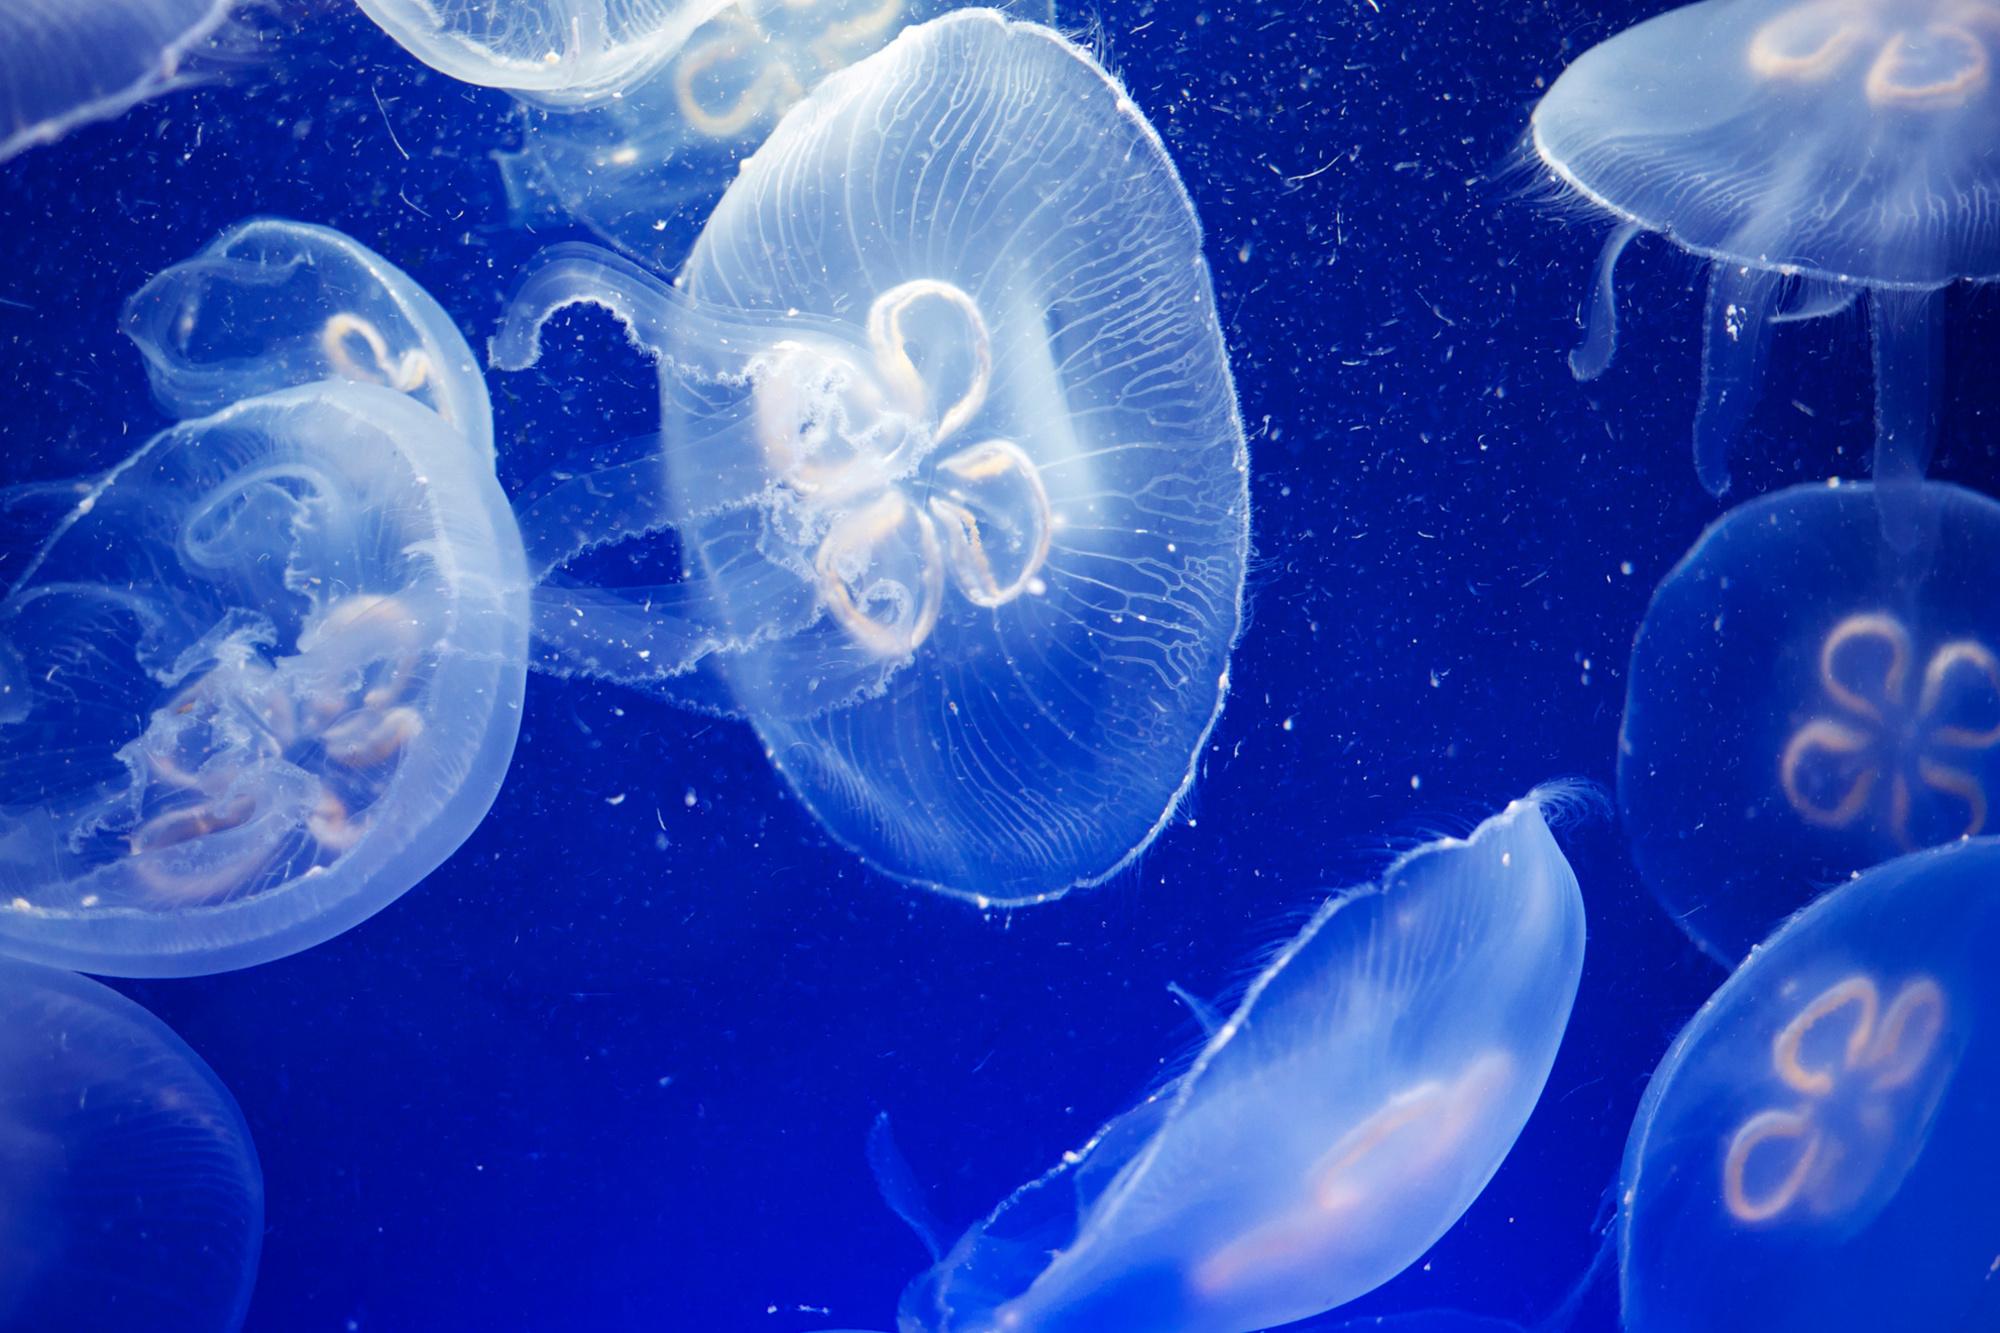 Mer Méditerranée: Vos vacances d'été risquent d'être gâchées par des méduses